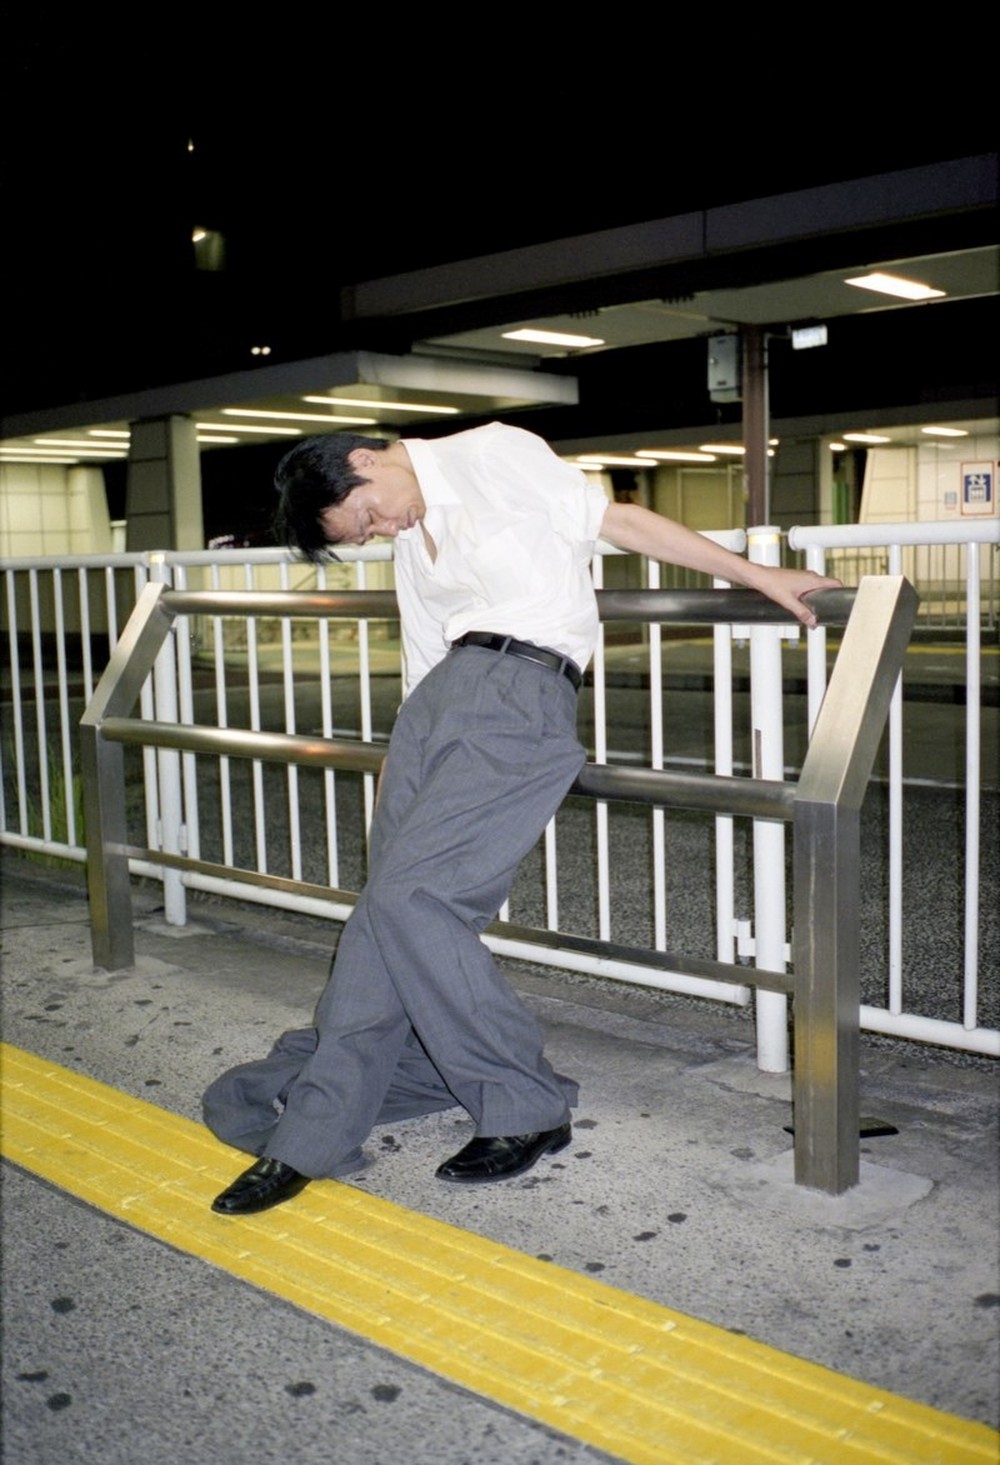 Làm việc 60 giờ một tuần thì như thế nào? Bộ ảnh chứng minh sự kiệt sức của dân văn phòng Nhật Bản - Ảnh 9.